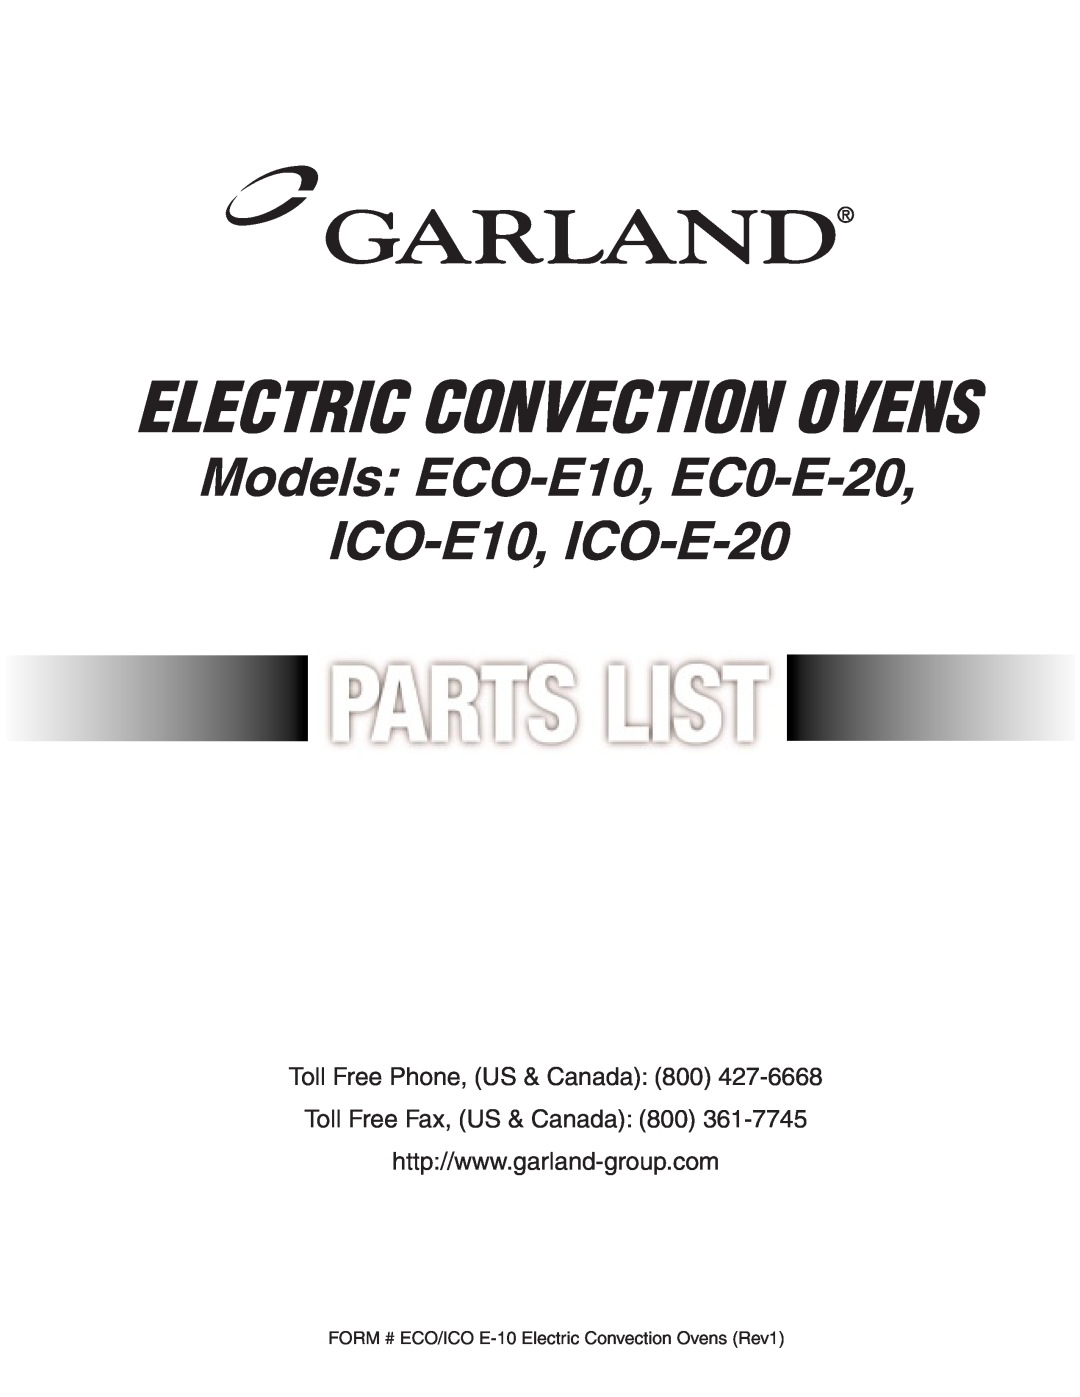 Garland manual Electric Convection Ovens, Models ECO-E10, EC0-E-20 ICO-E10, ICO-E-20, Toll Free Phone, US & Canada 